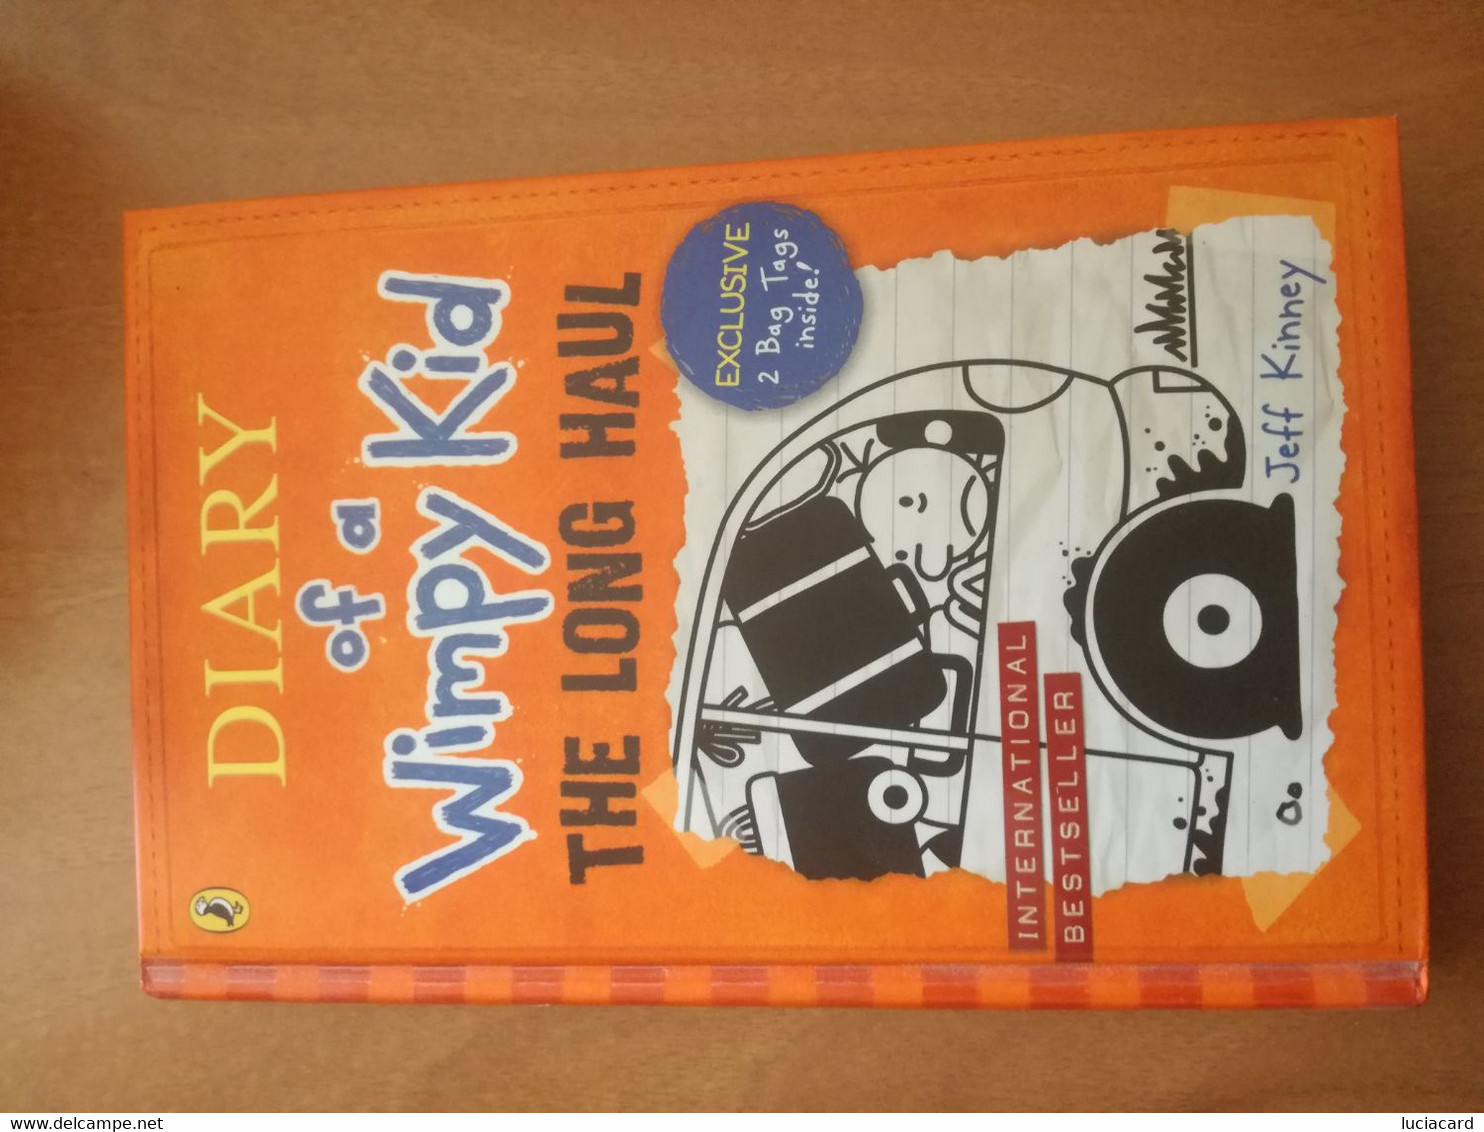 DIARY OF A WIMPY KID -THE LONG HAUL -KINNEY -PUFFIN BOOKS 2014 - Boeken In Reeks